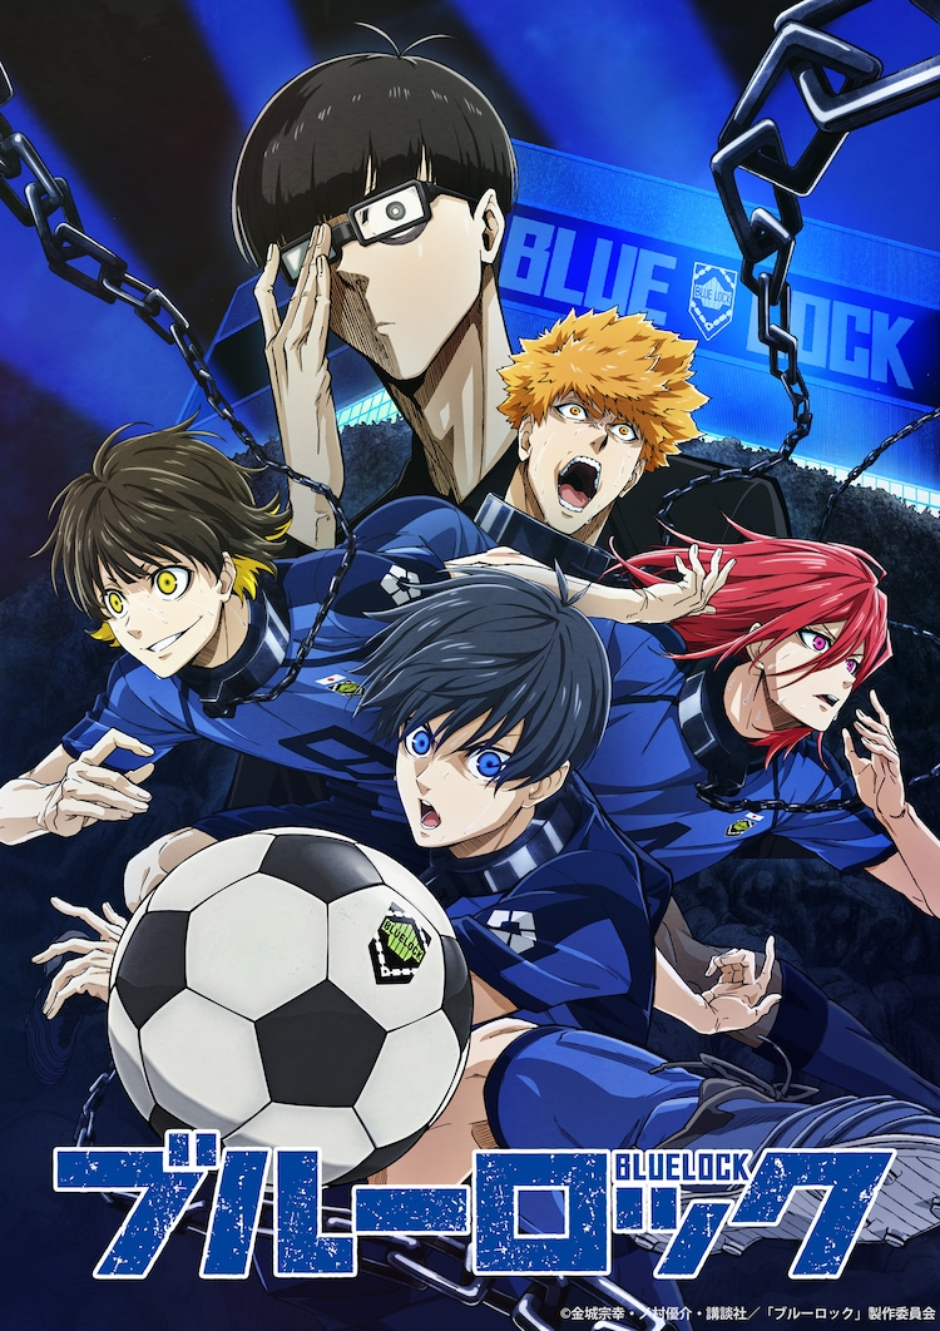 O anime Blue Lock vem com a premissa de que para ganhar uma copa